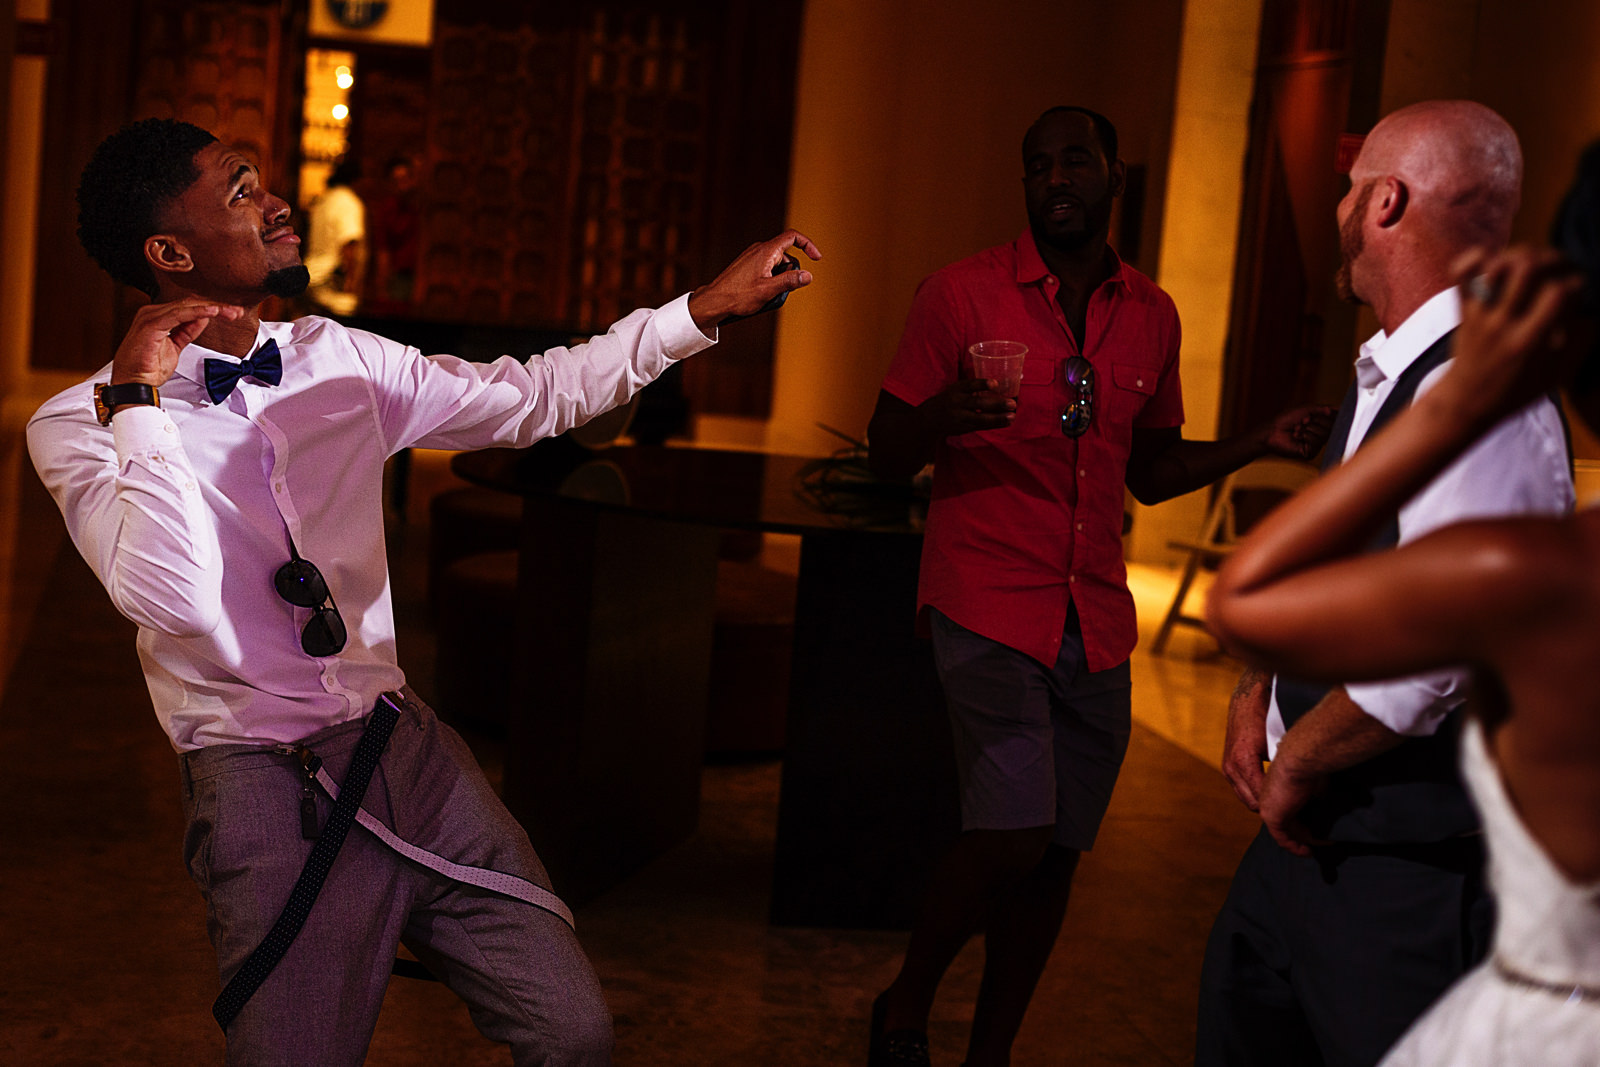 Wedding guest showing his best moves in the dance floor at the Hyatt Ziva ballroom